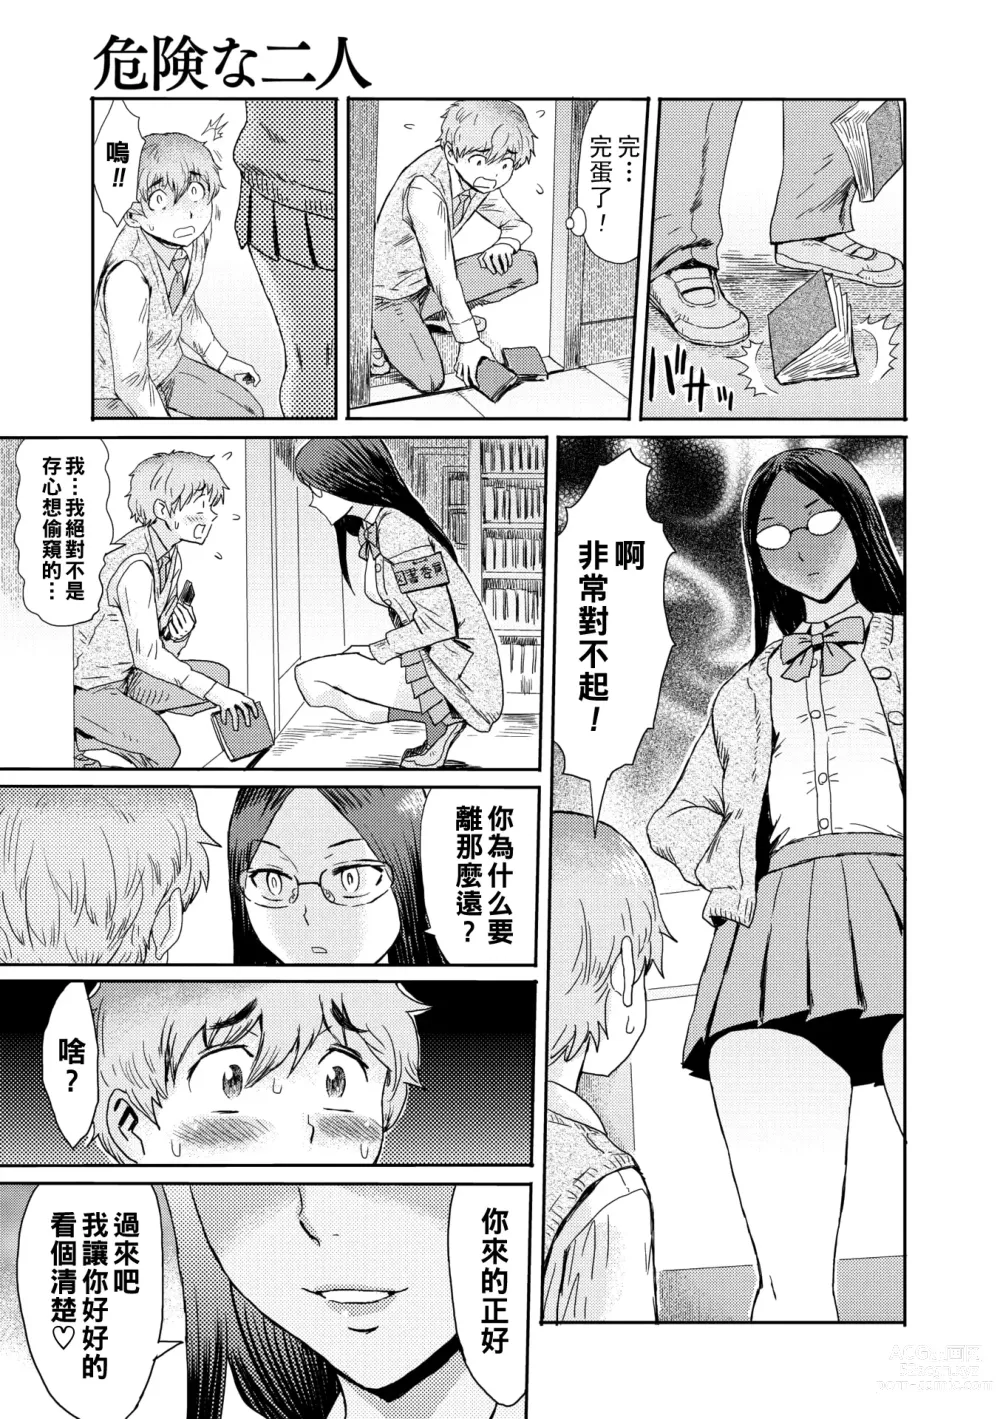 Page 5 of manga Danger Pair